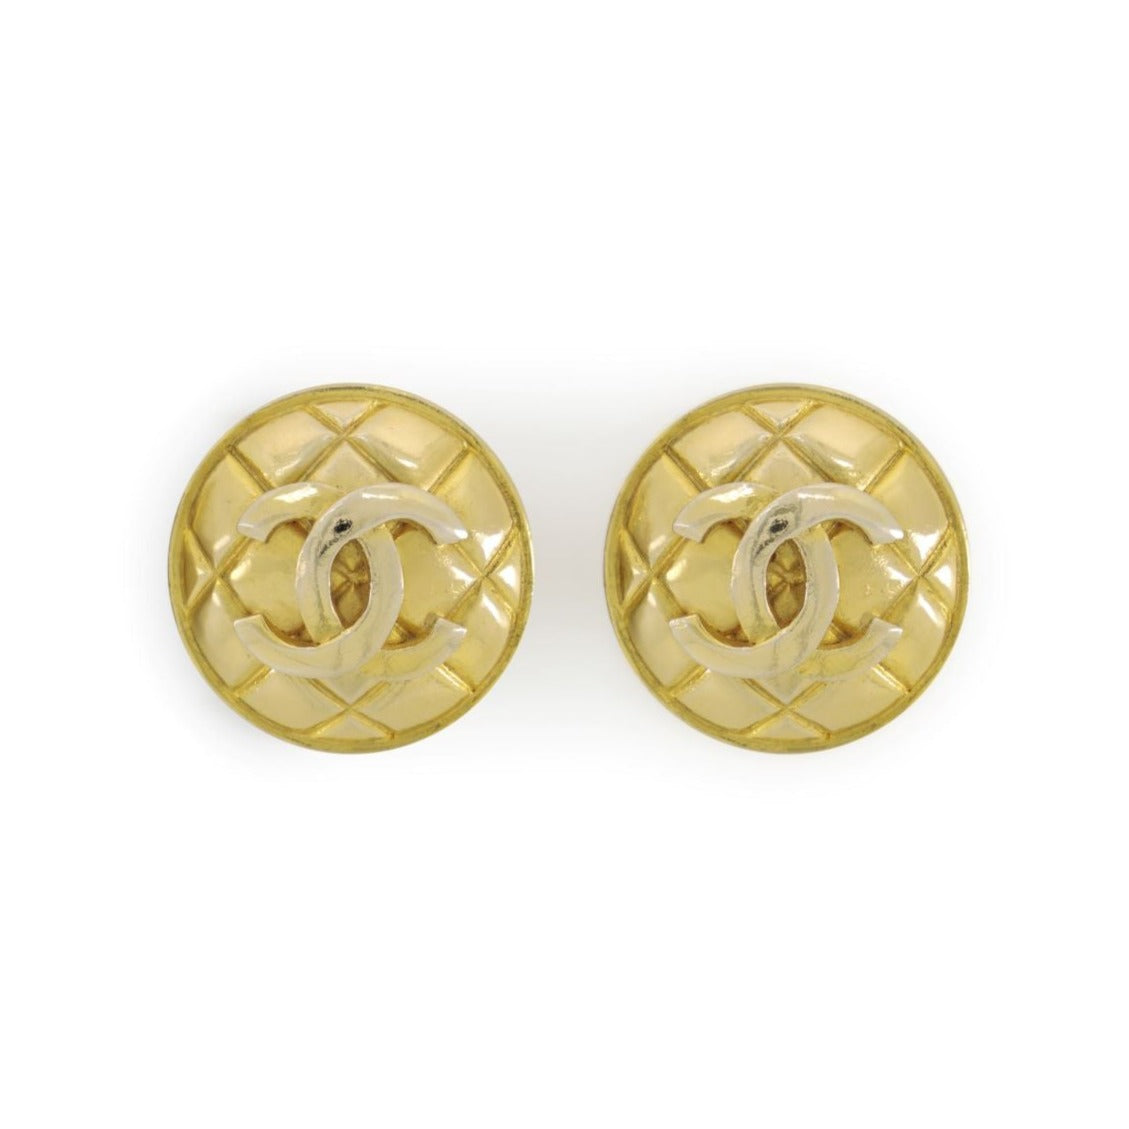 Double C Chanel Earrings -  UK